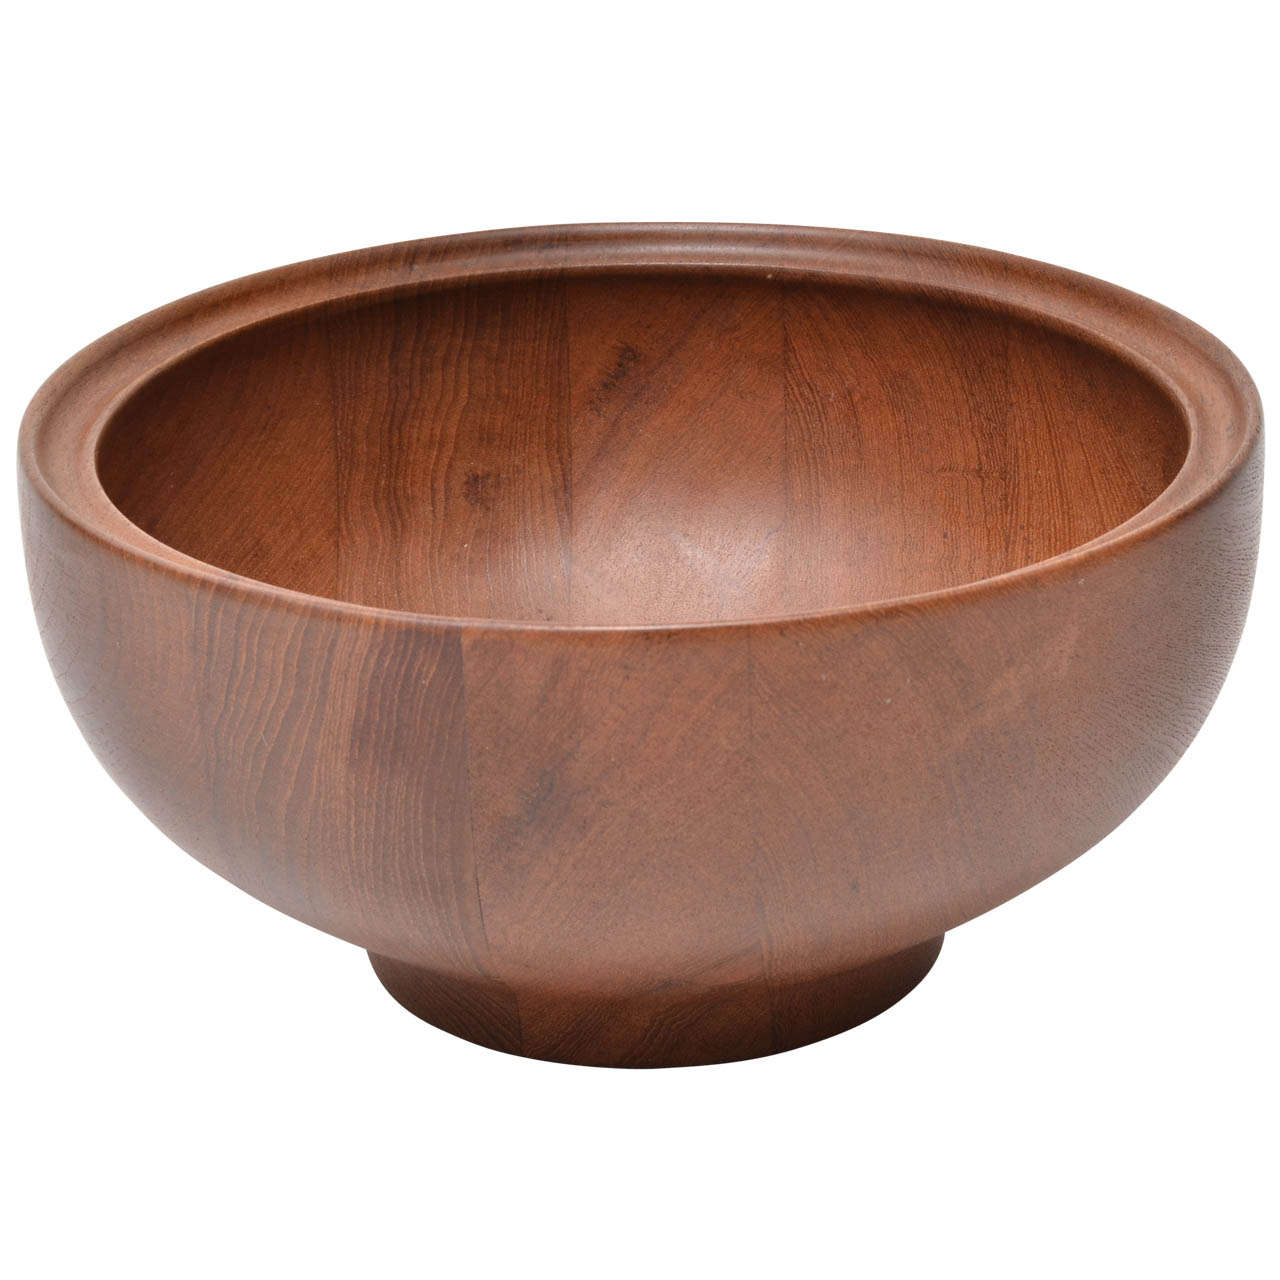 Henning Koppel Teak Bowl Designed for Georg Jensen